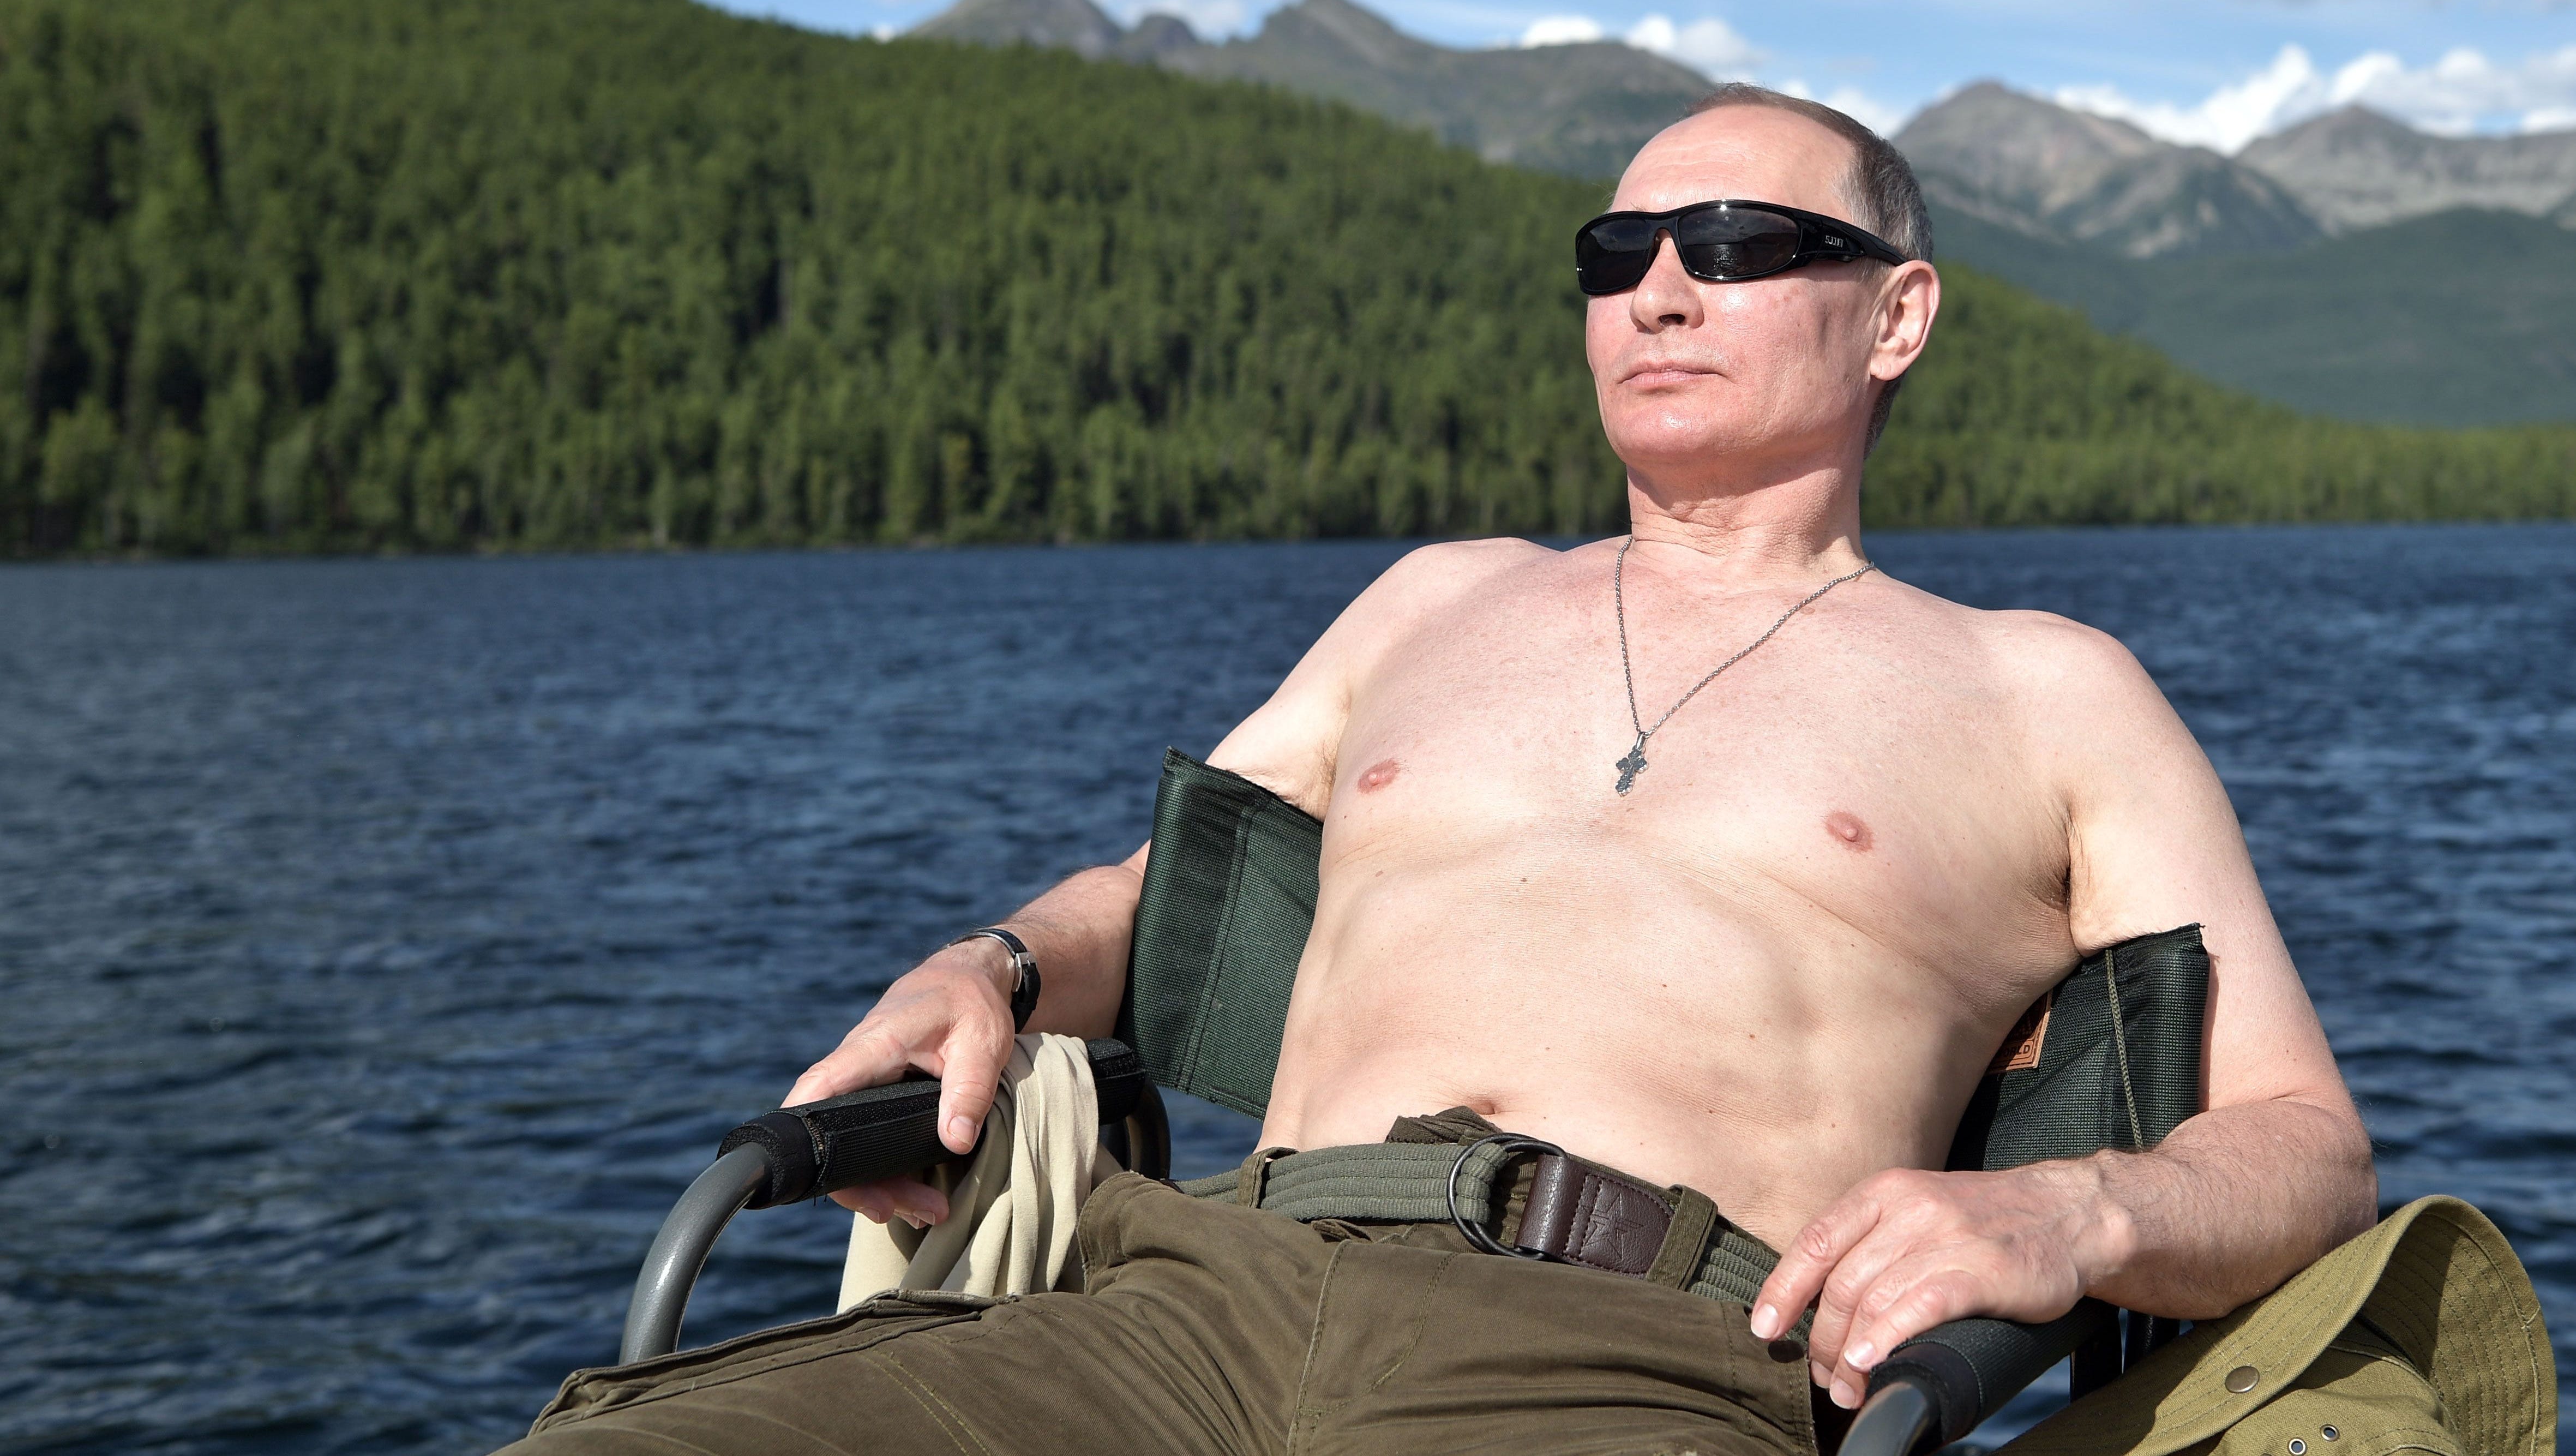 The Kremlin Letter nude photos